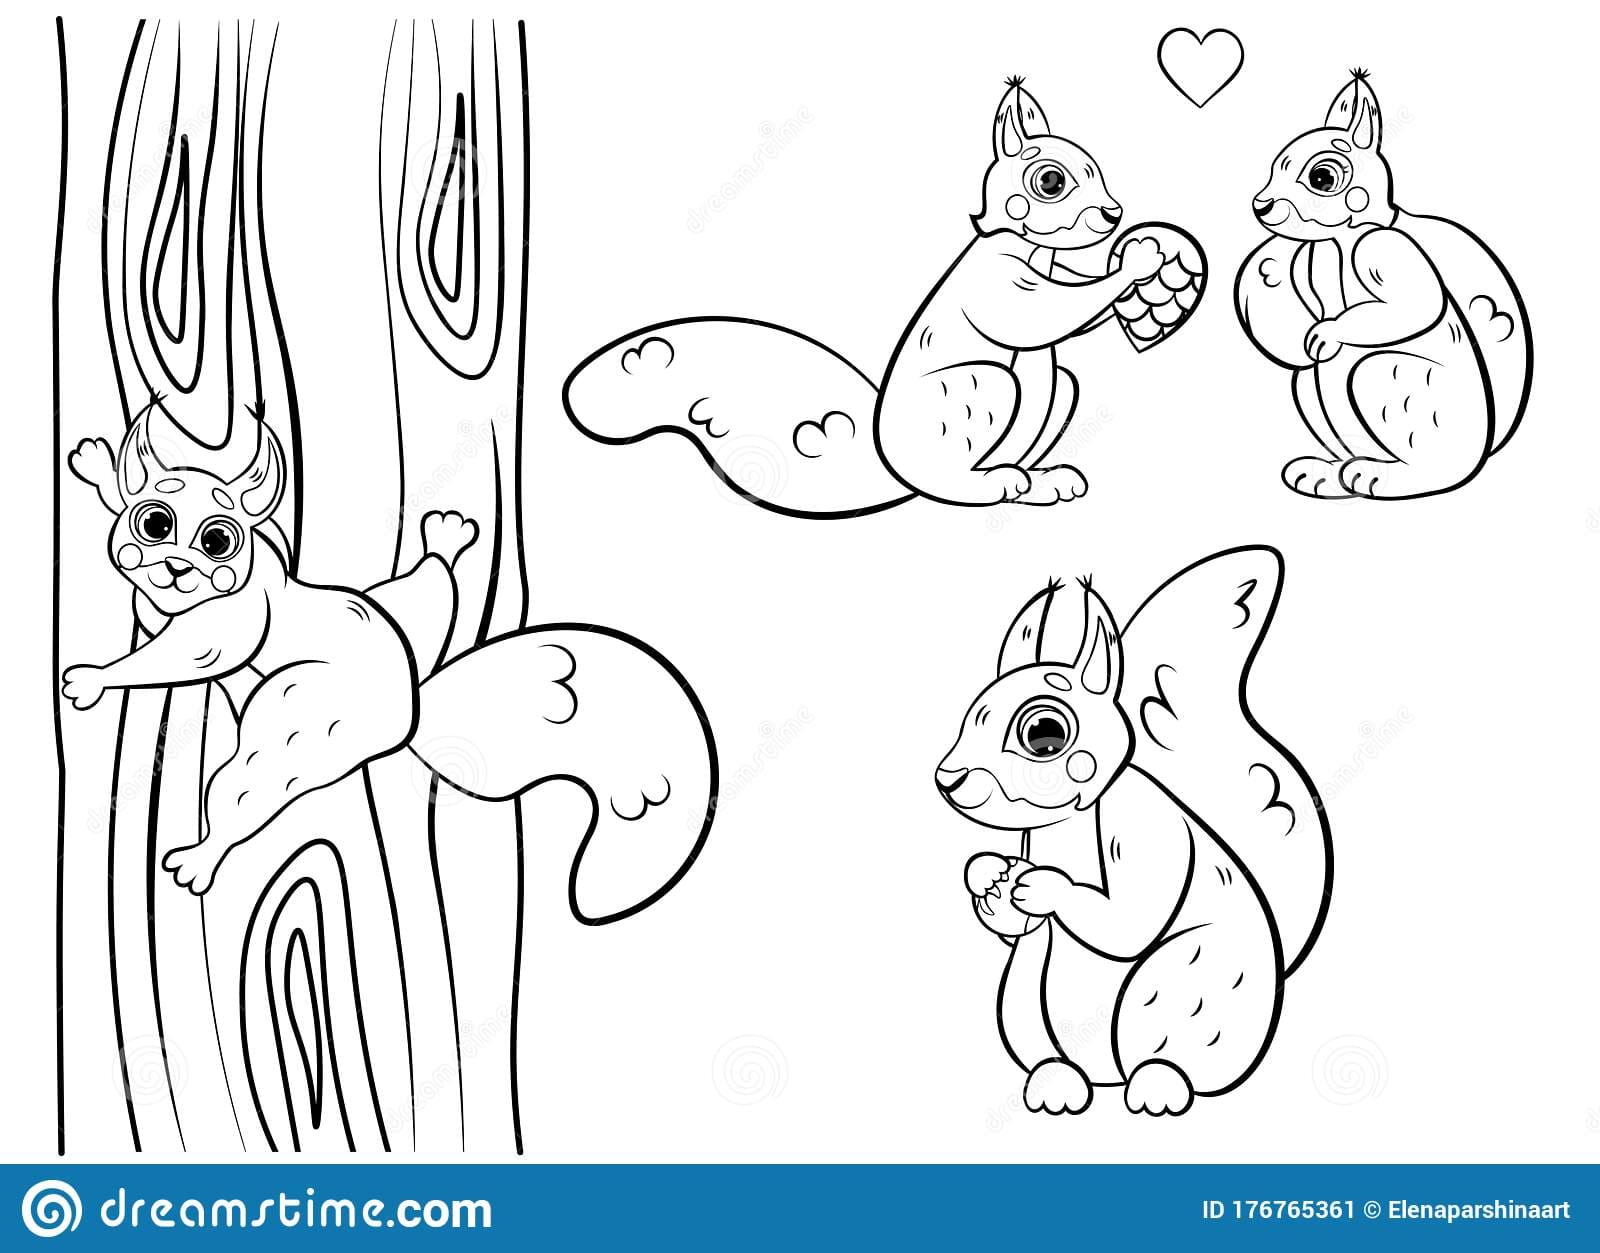 Cute Cartoon Squirrel Vector Coloring Page